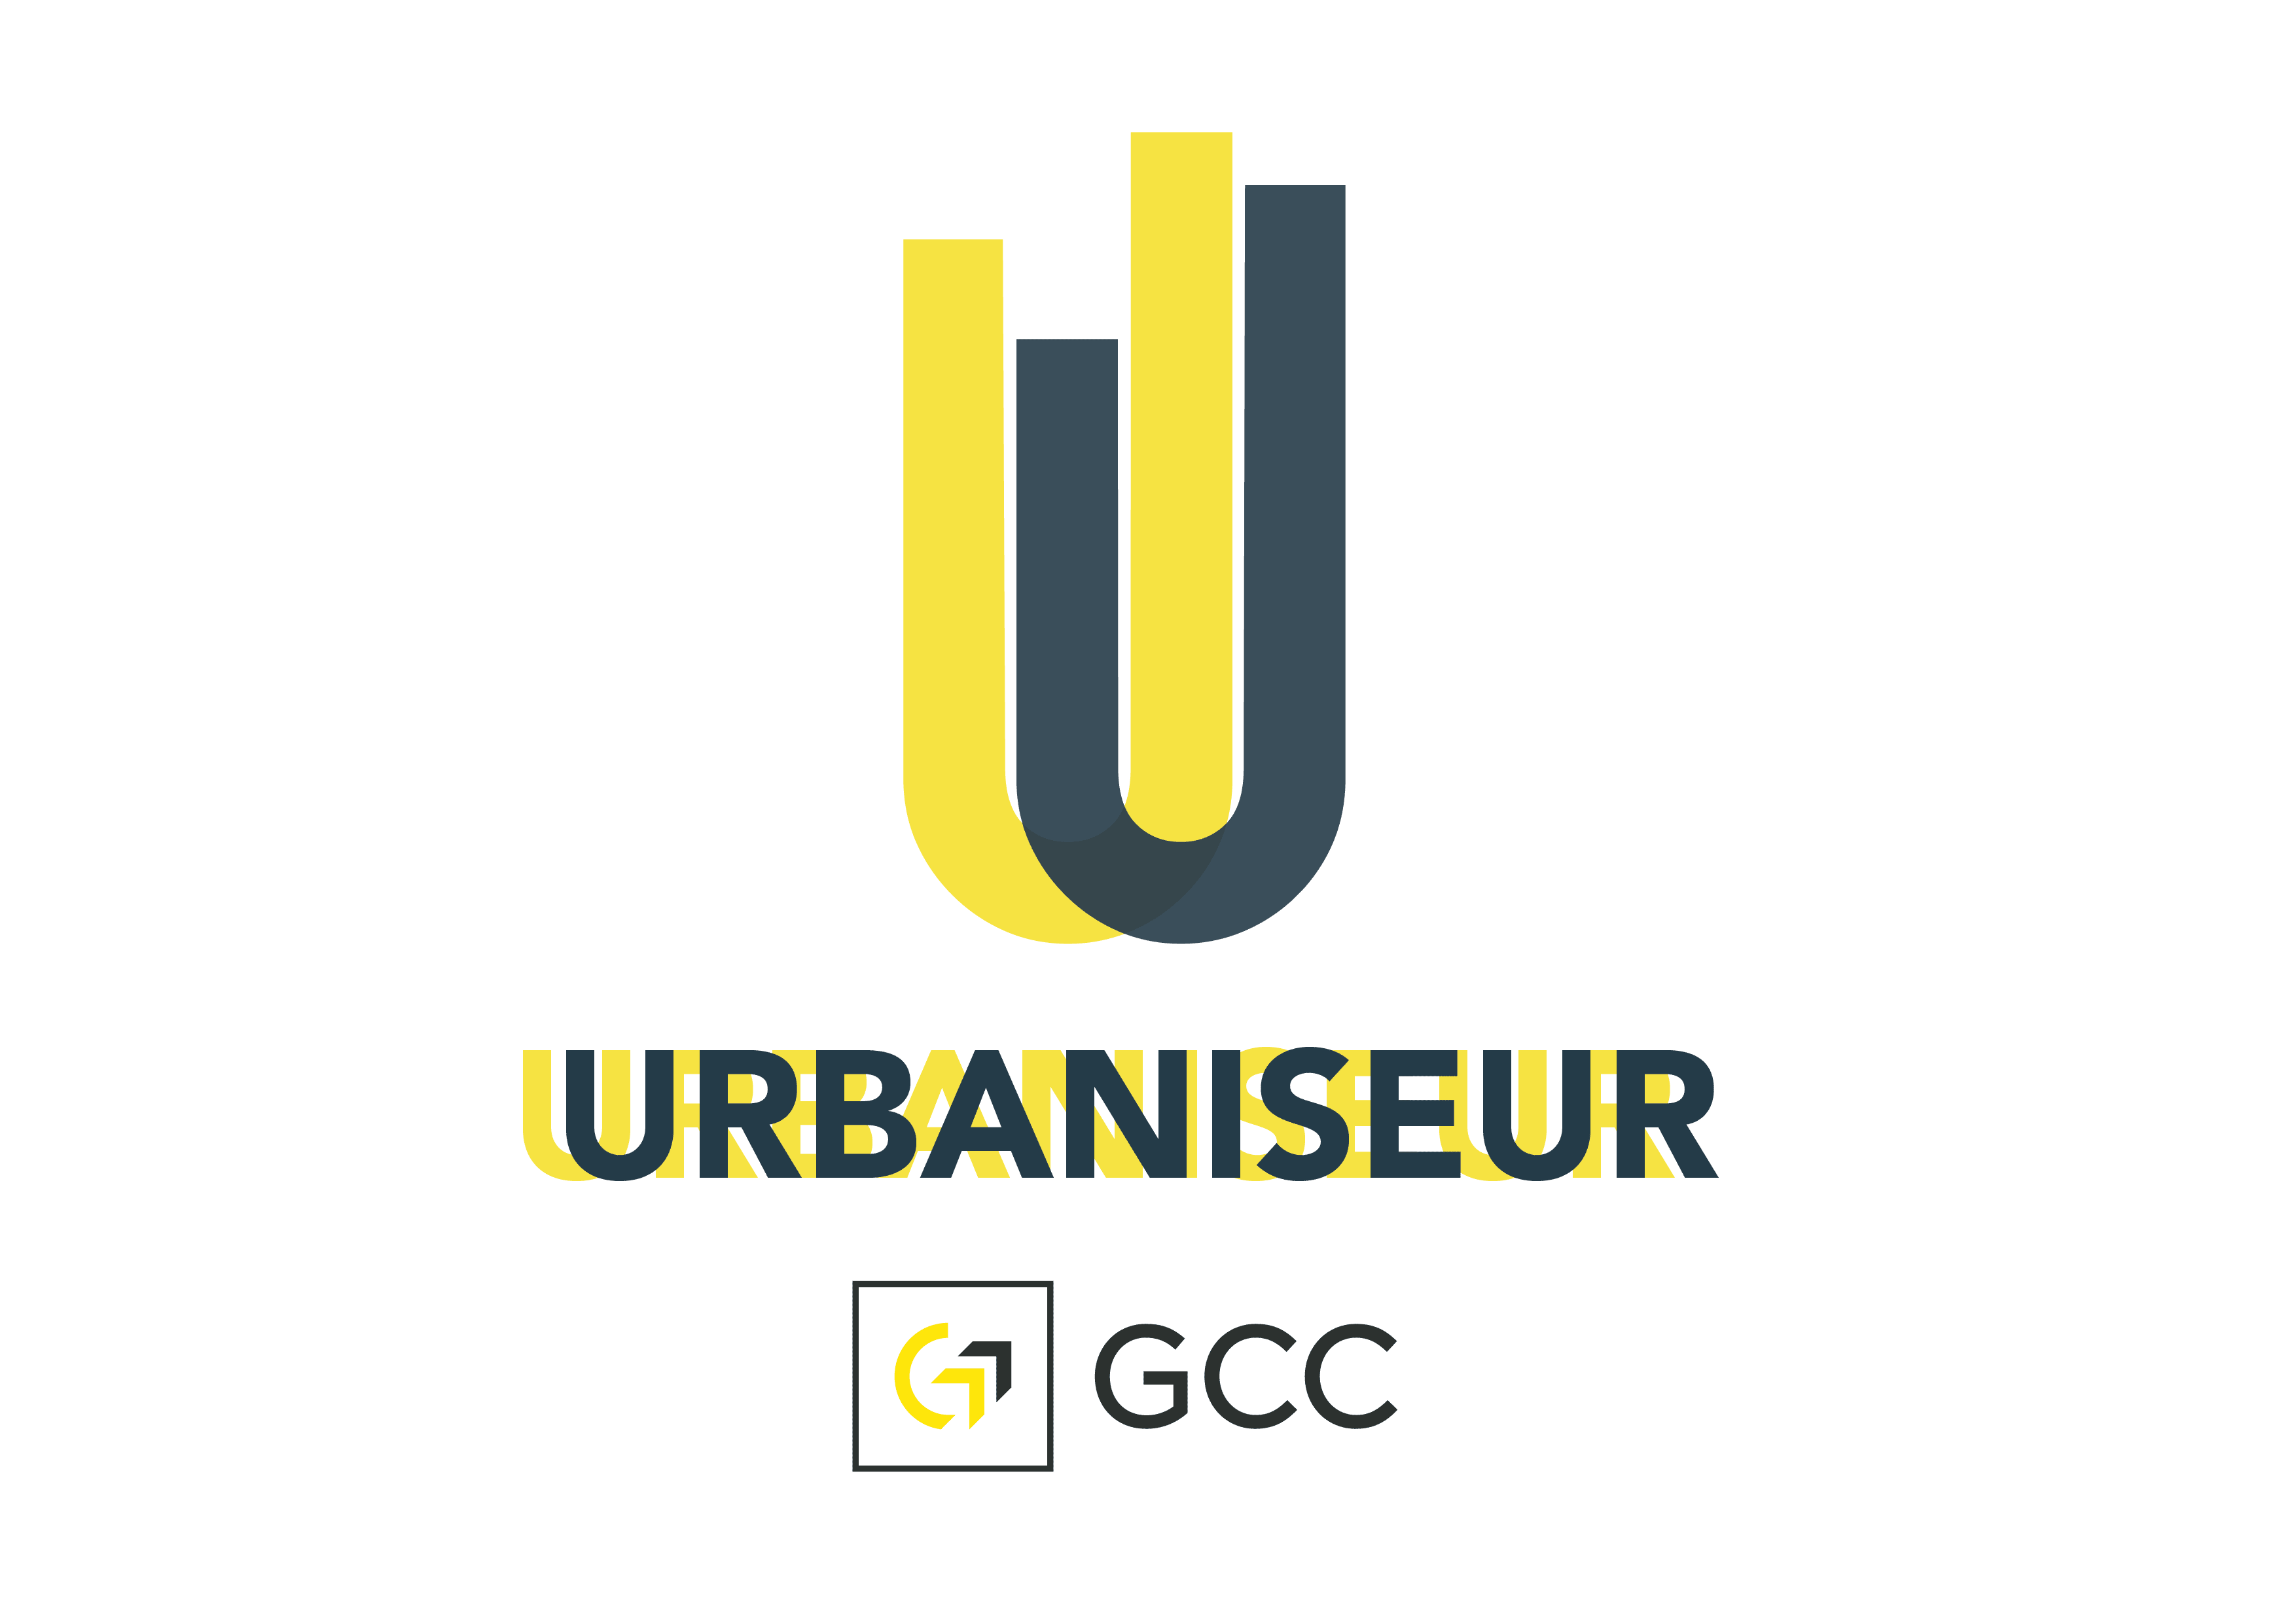 logo urbaniseur_gcc